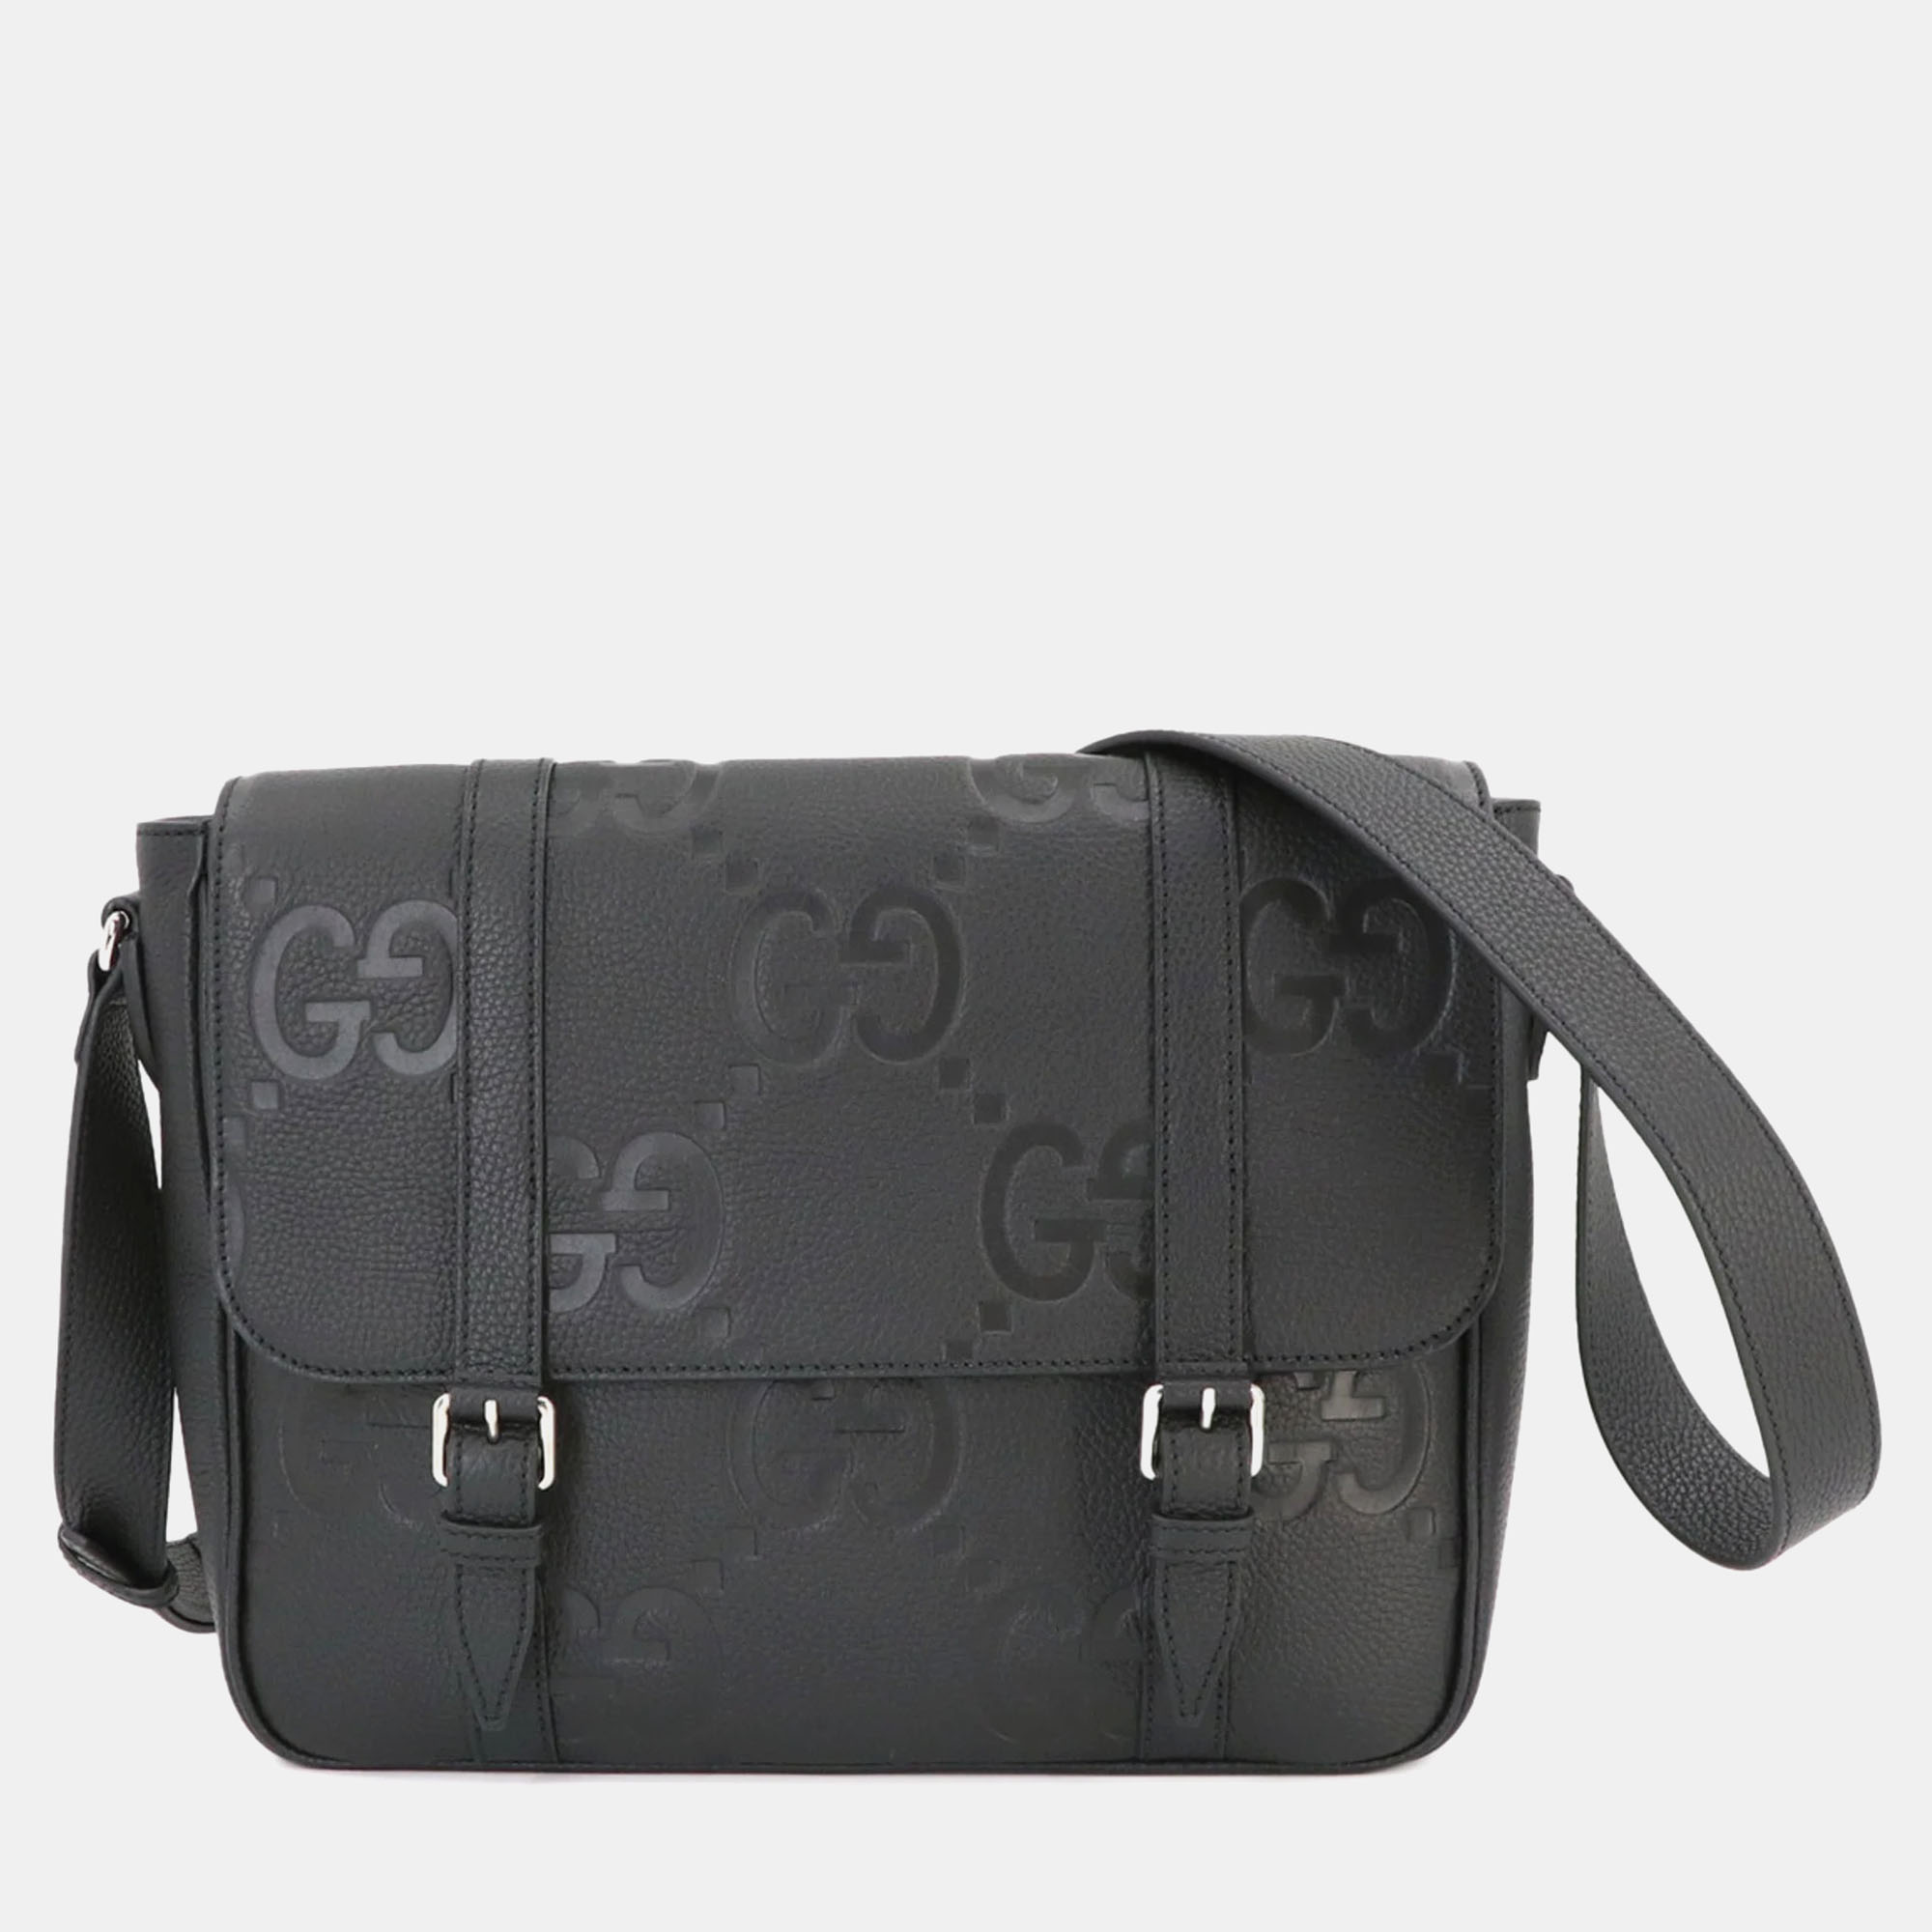 Gucci black leather jumbo gg shoulder bag